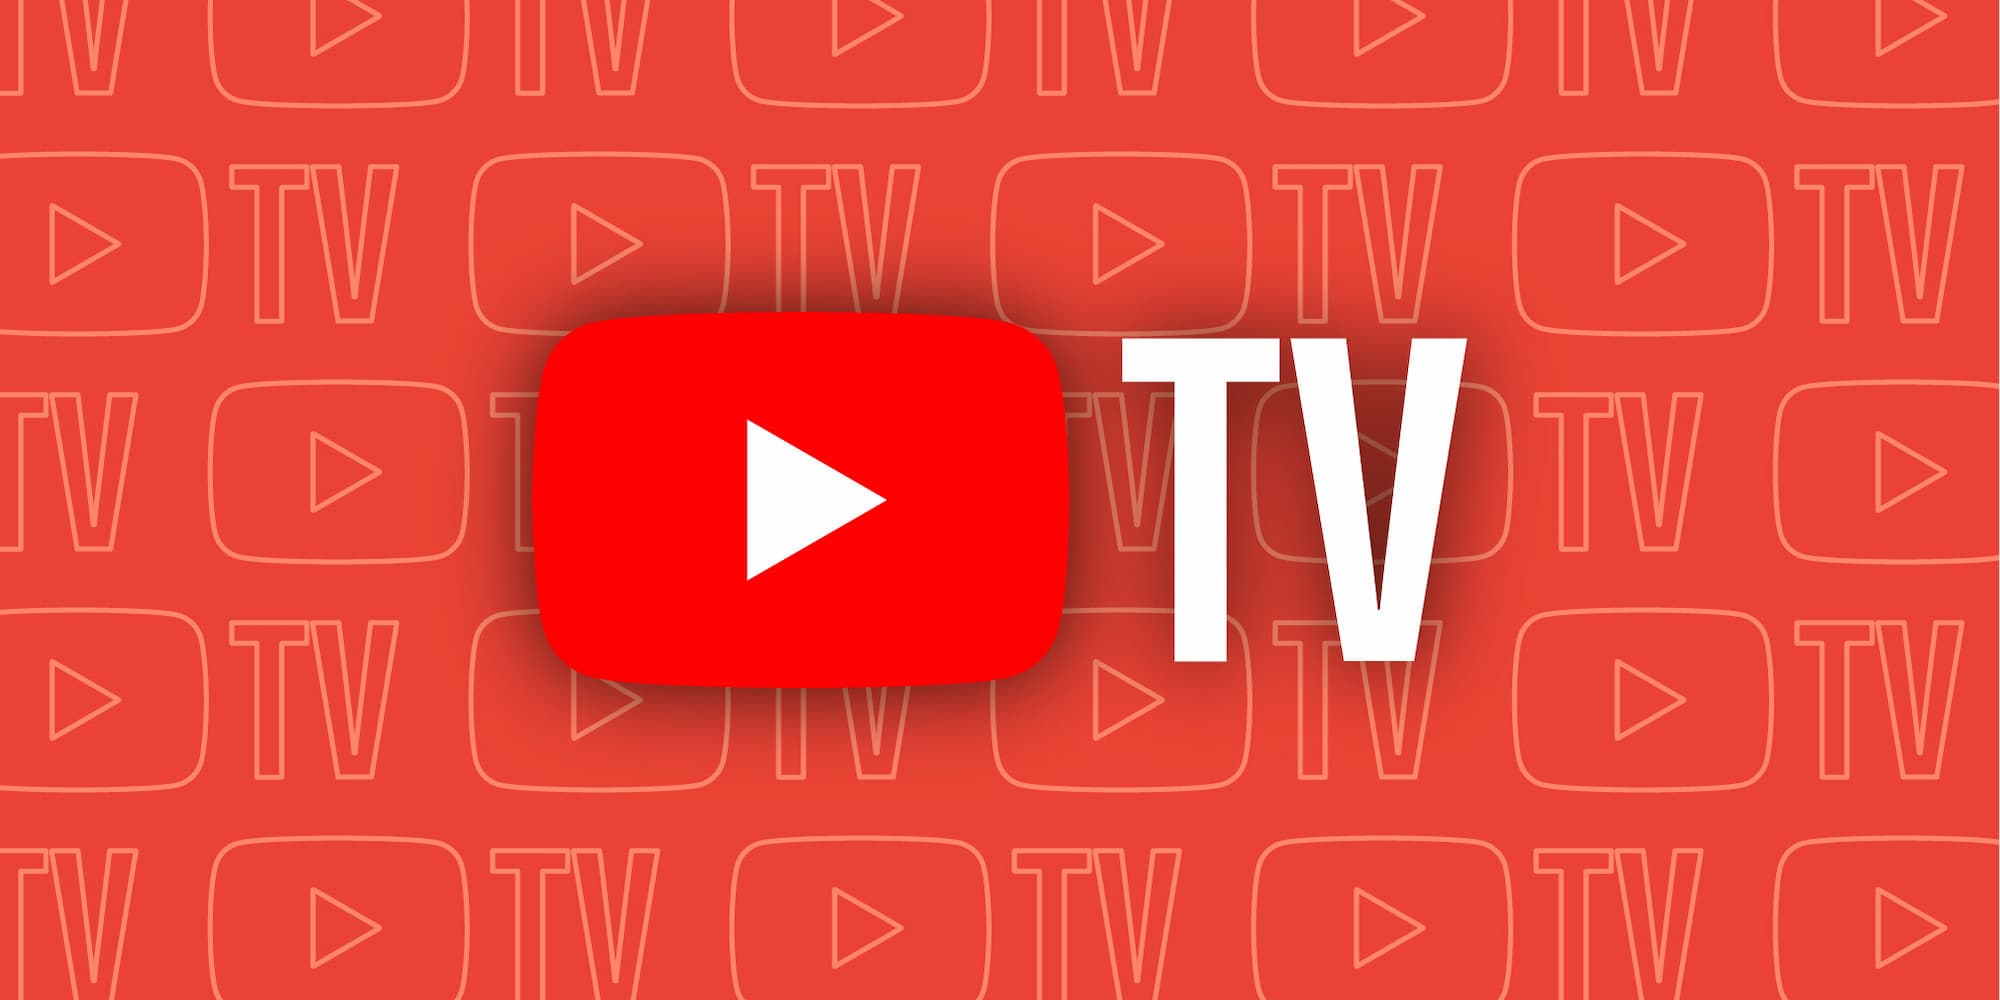 nfl redzone youtube tv cost